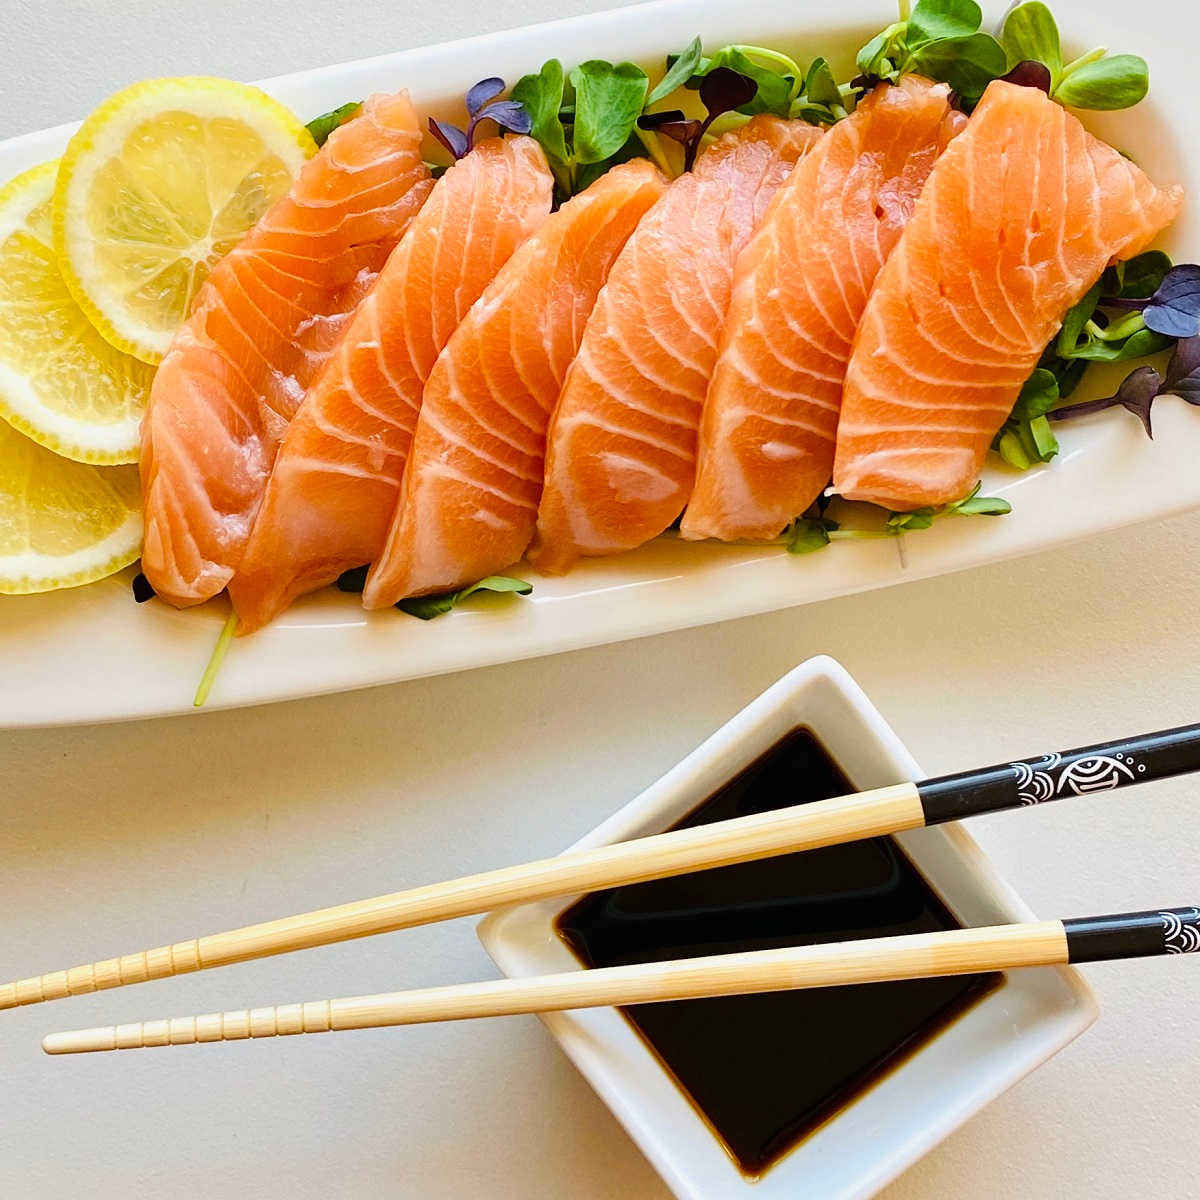 Sashimi cá hồi, món ngon từ cá hồi được nhiều người ưa thích.